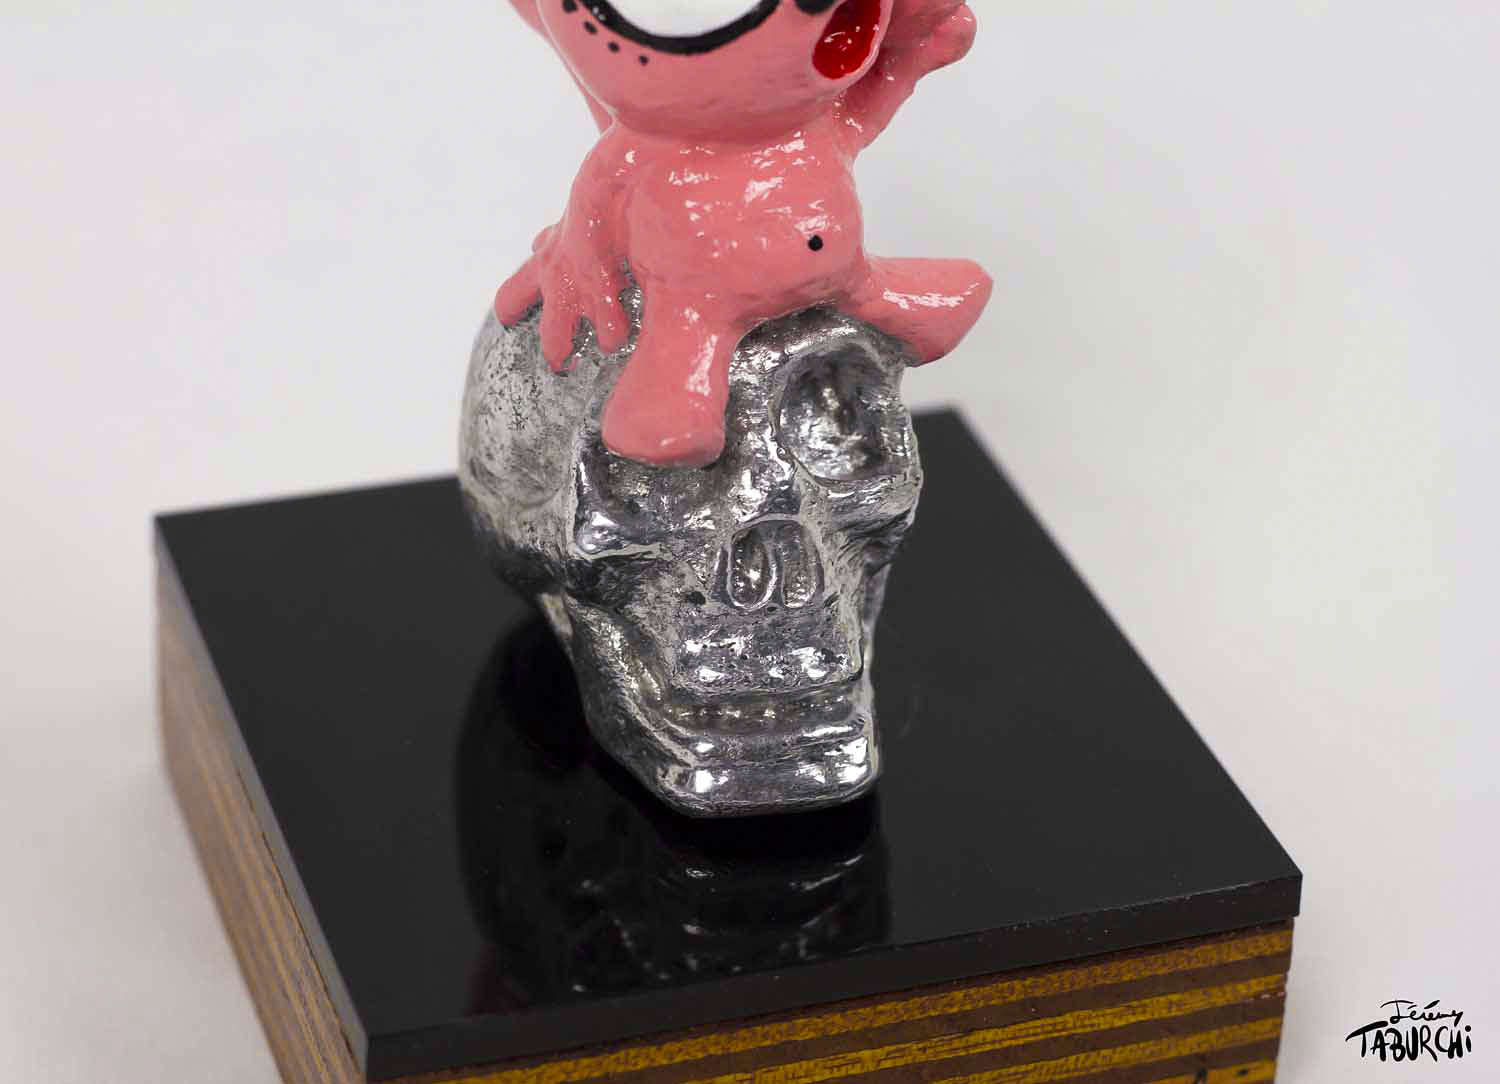 Sculpture of the Pink Cat in aluminum